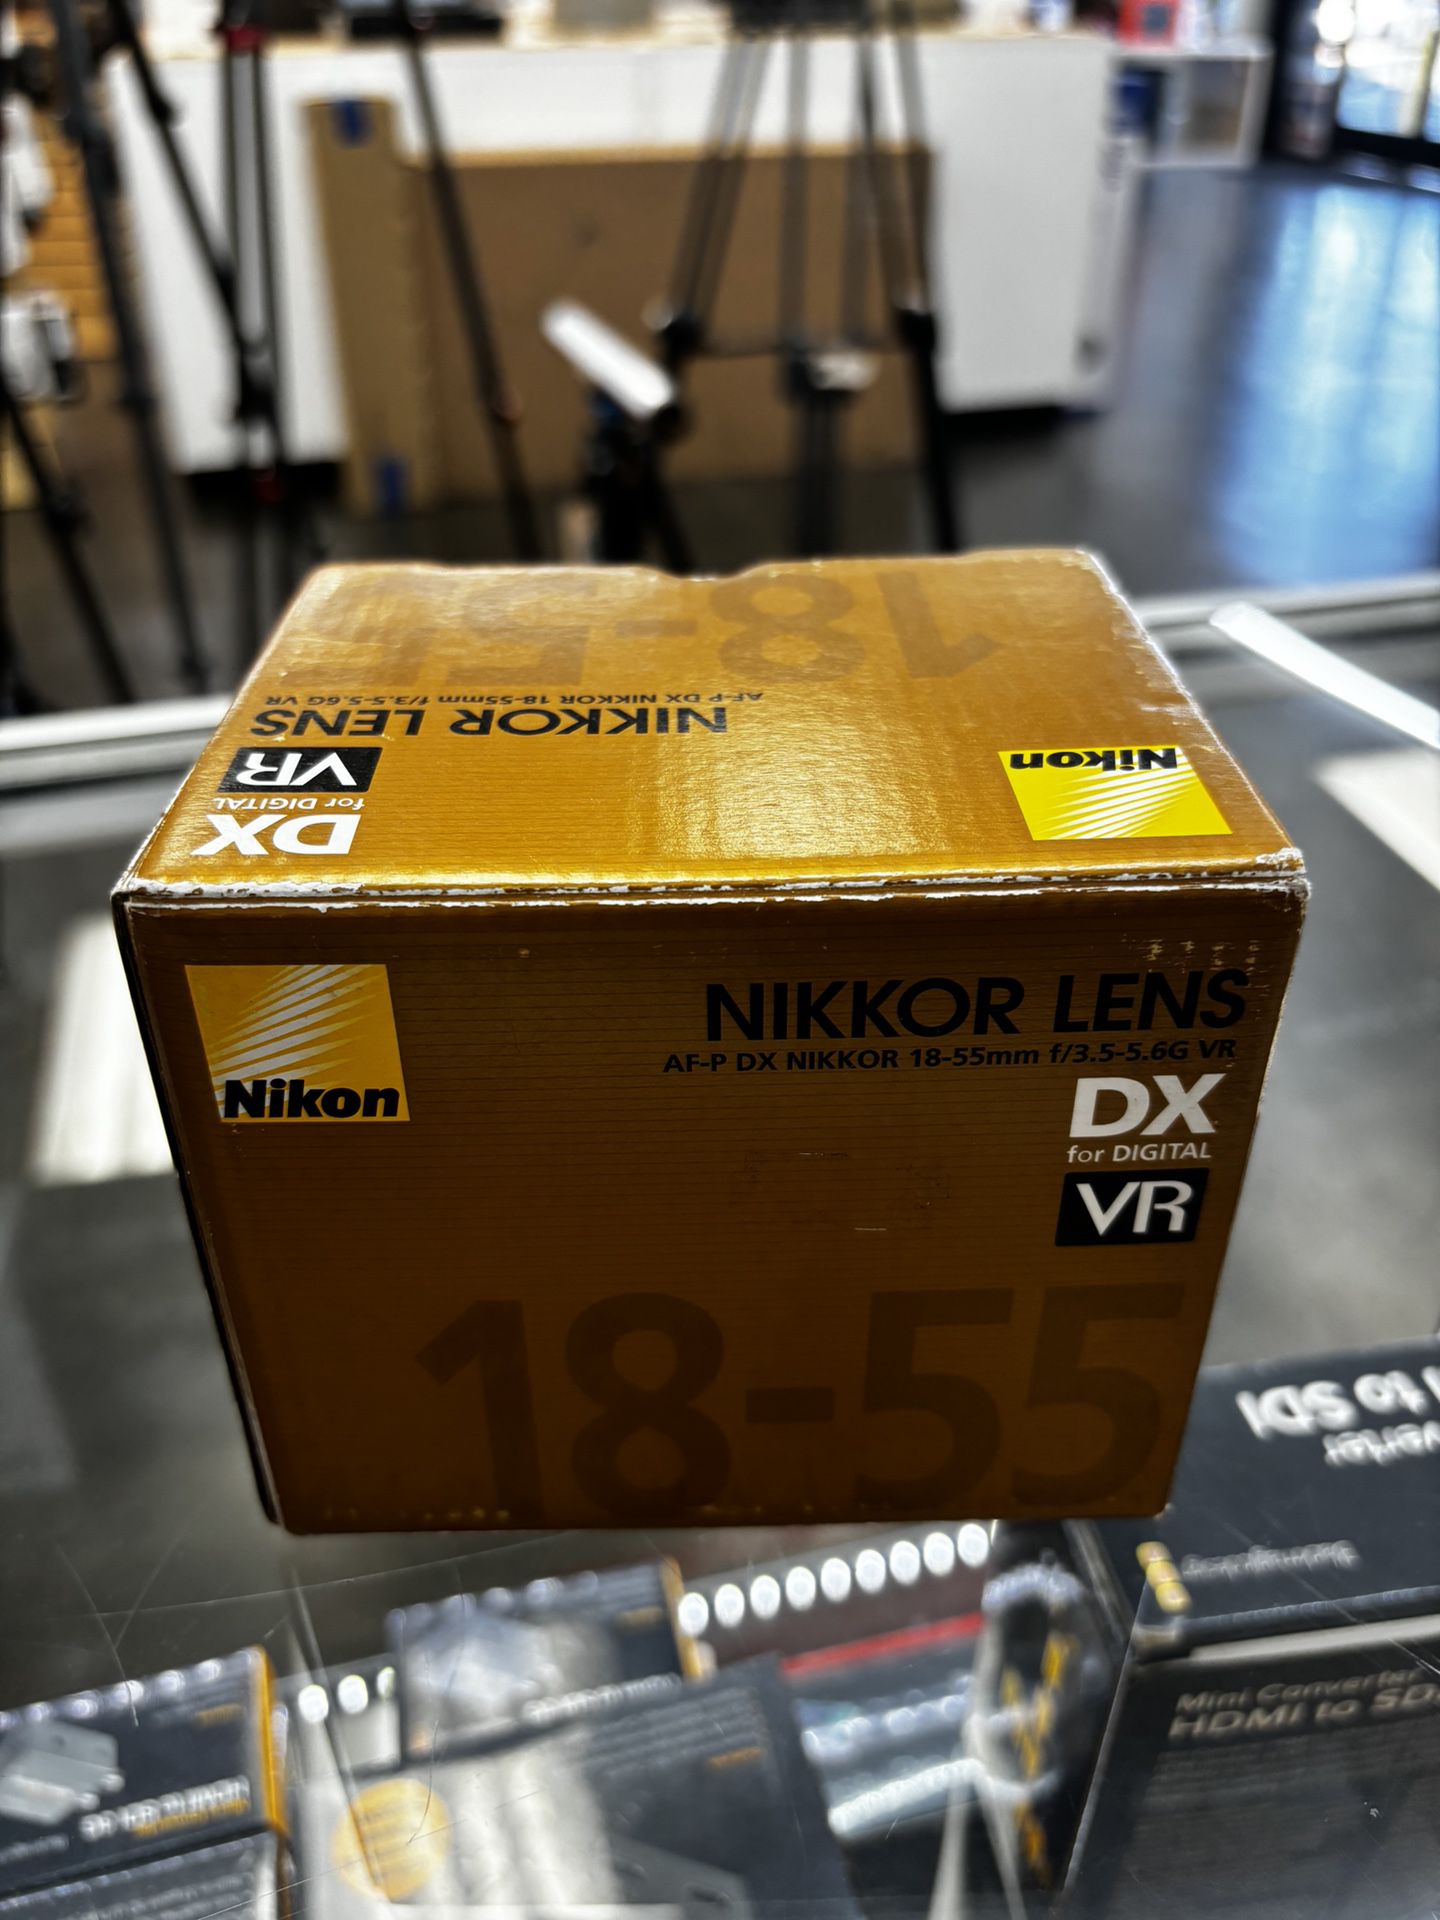 Nikon AF-P DX Nikkor 18-55mm F3.5-5.6G VR Lens